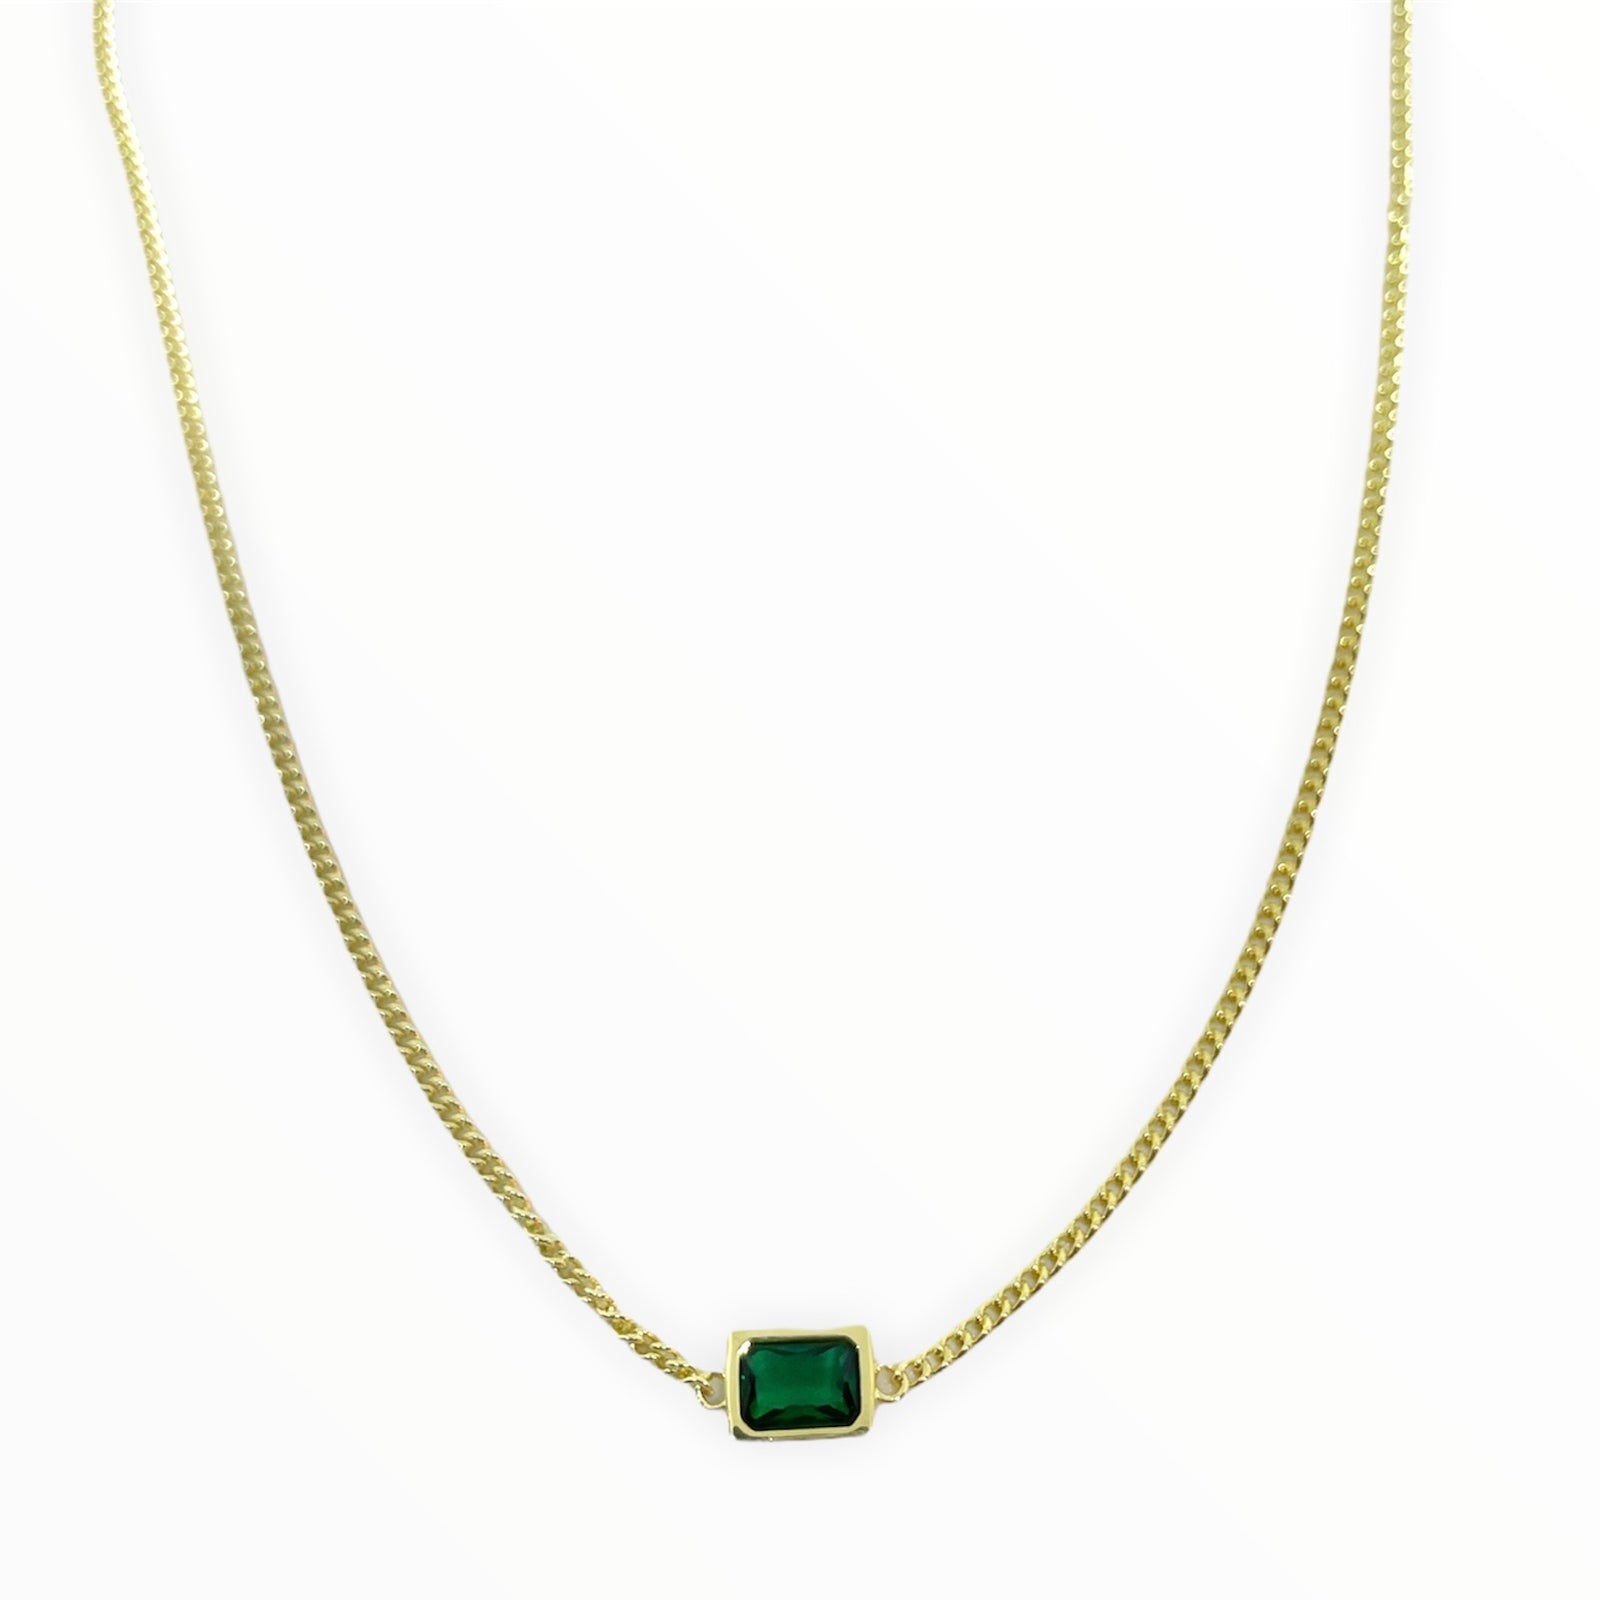 Emerald square necklace